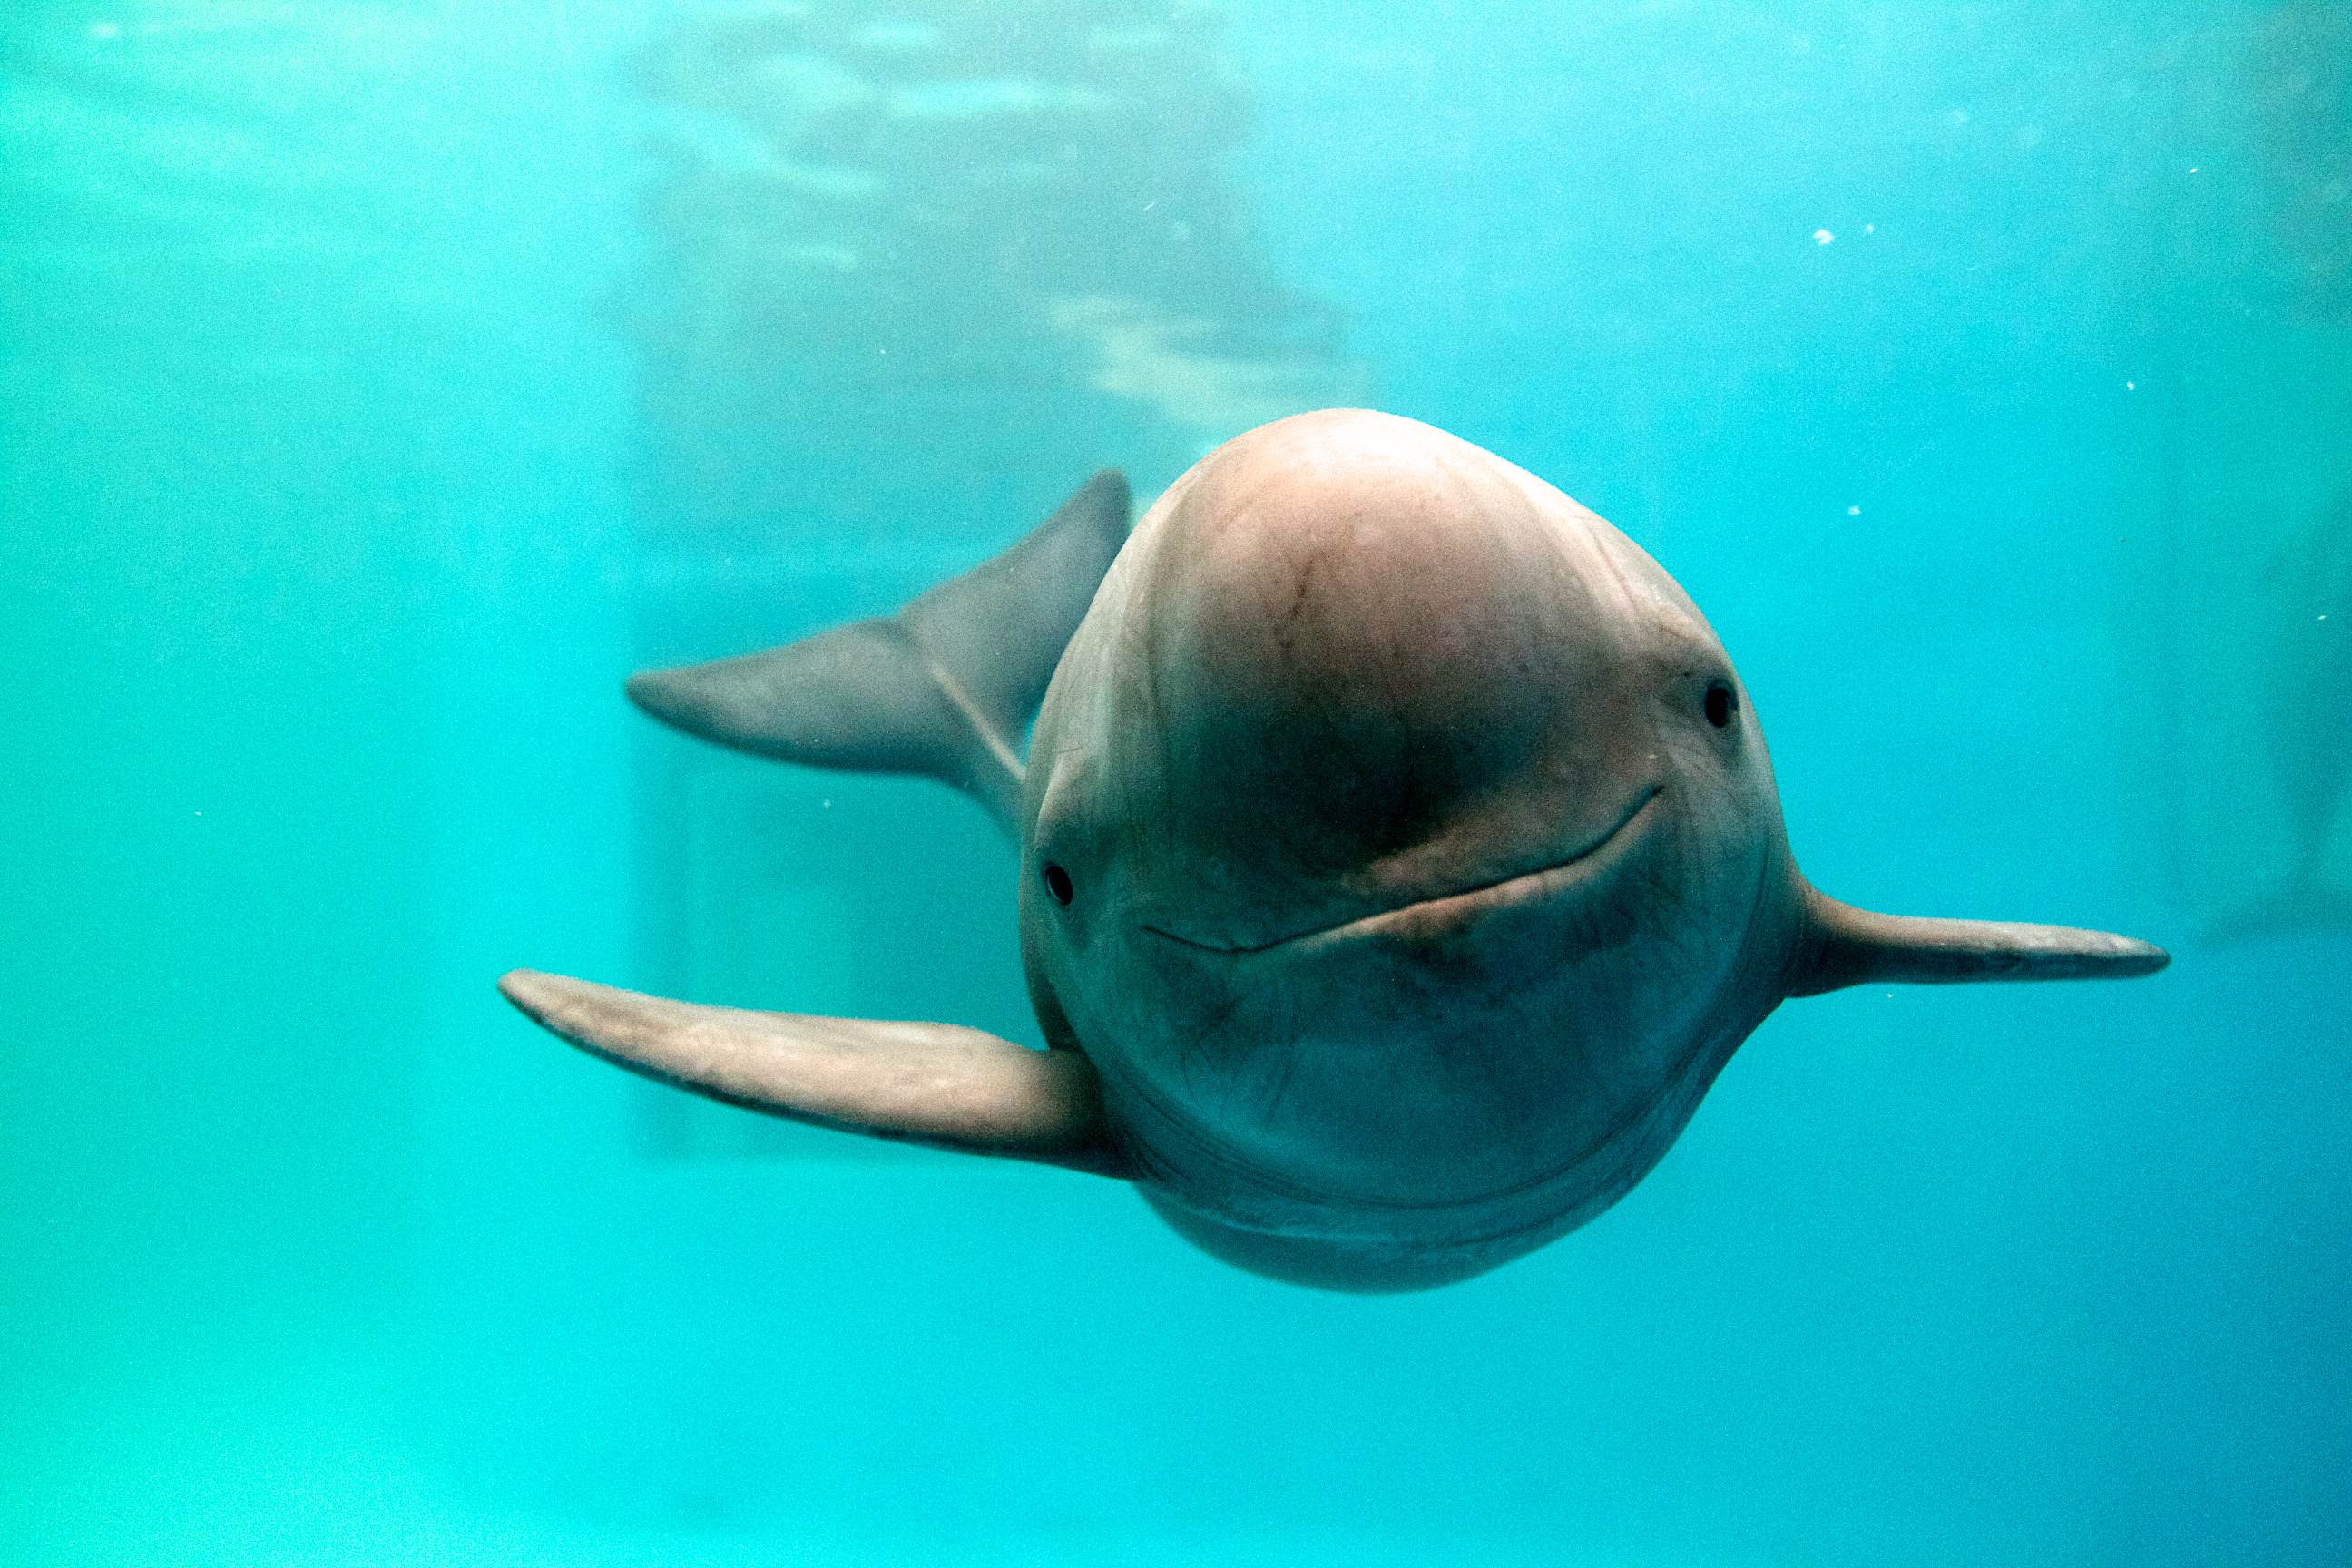 http://newshour-tc.pbs.org/newshour/wp-content/uploads/2015/03/dolphin.jpg